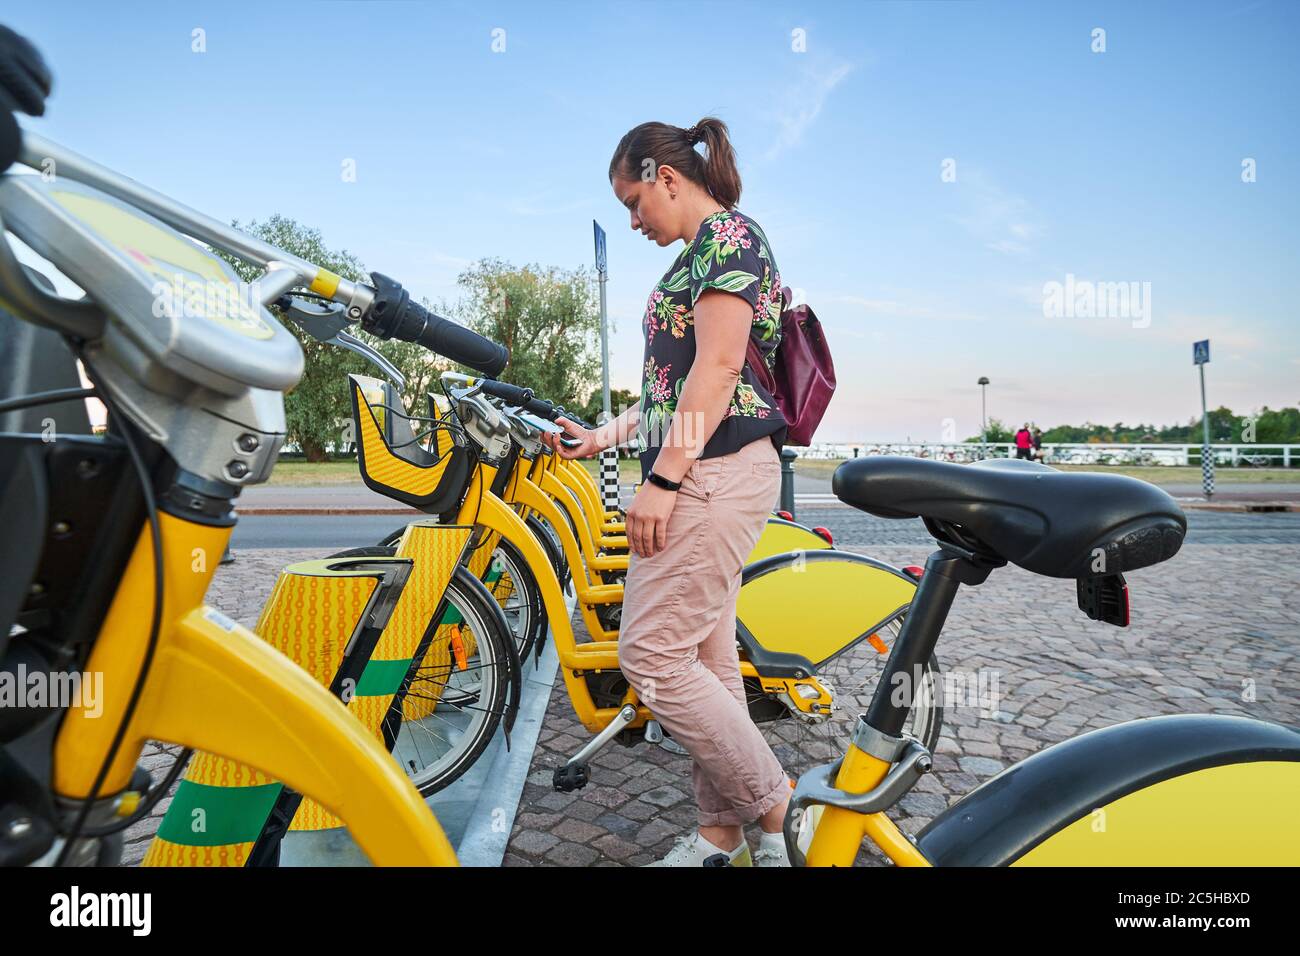 Mujer De Negocios Alquila Una Bicicleta Eléctrica Compartida En La Calle De  La Ciudad De Camino Al Trabajo Foto de archivo - Imagen de ciudad, gente:  221569310